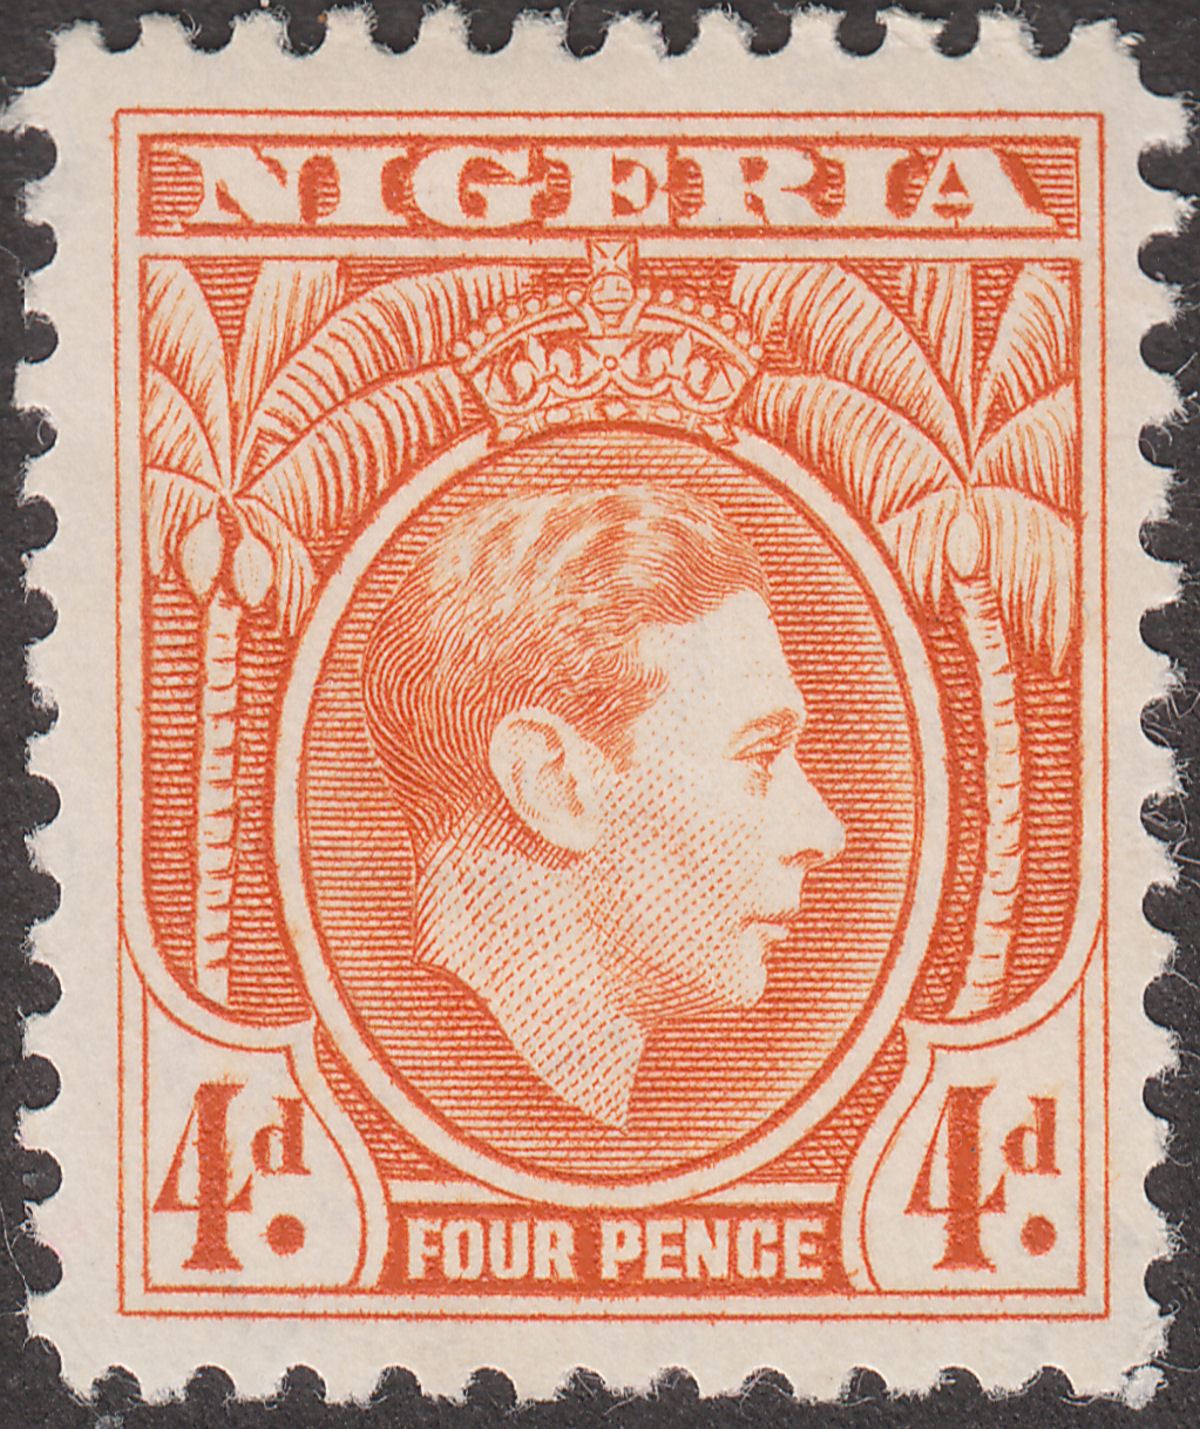 Nigeria 1938 King George VI 4d Orange Mint SG54 cat £50